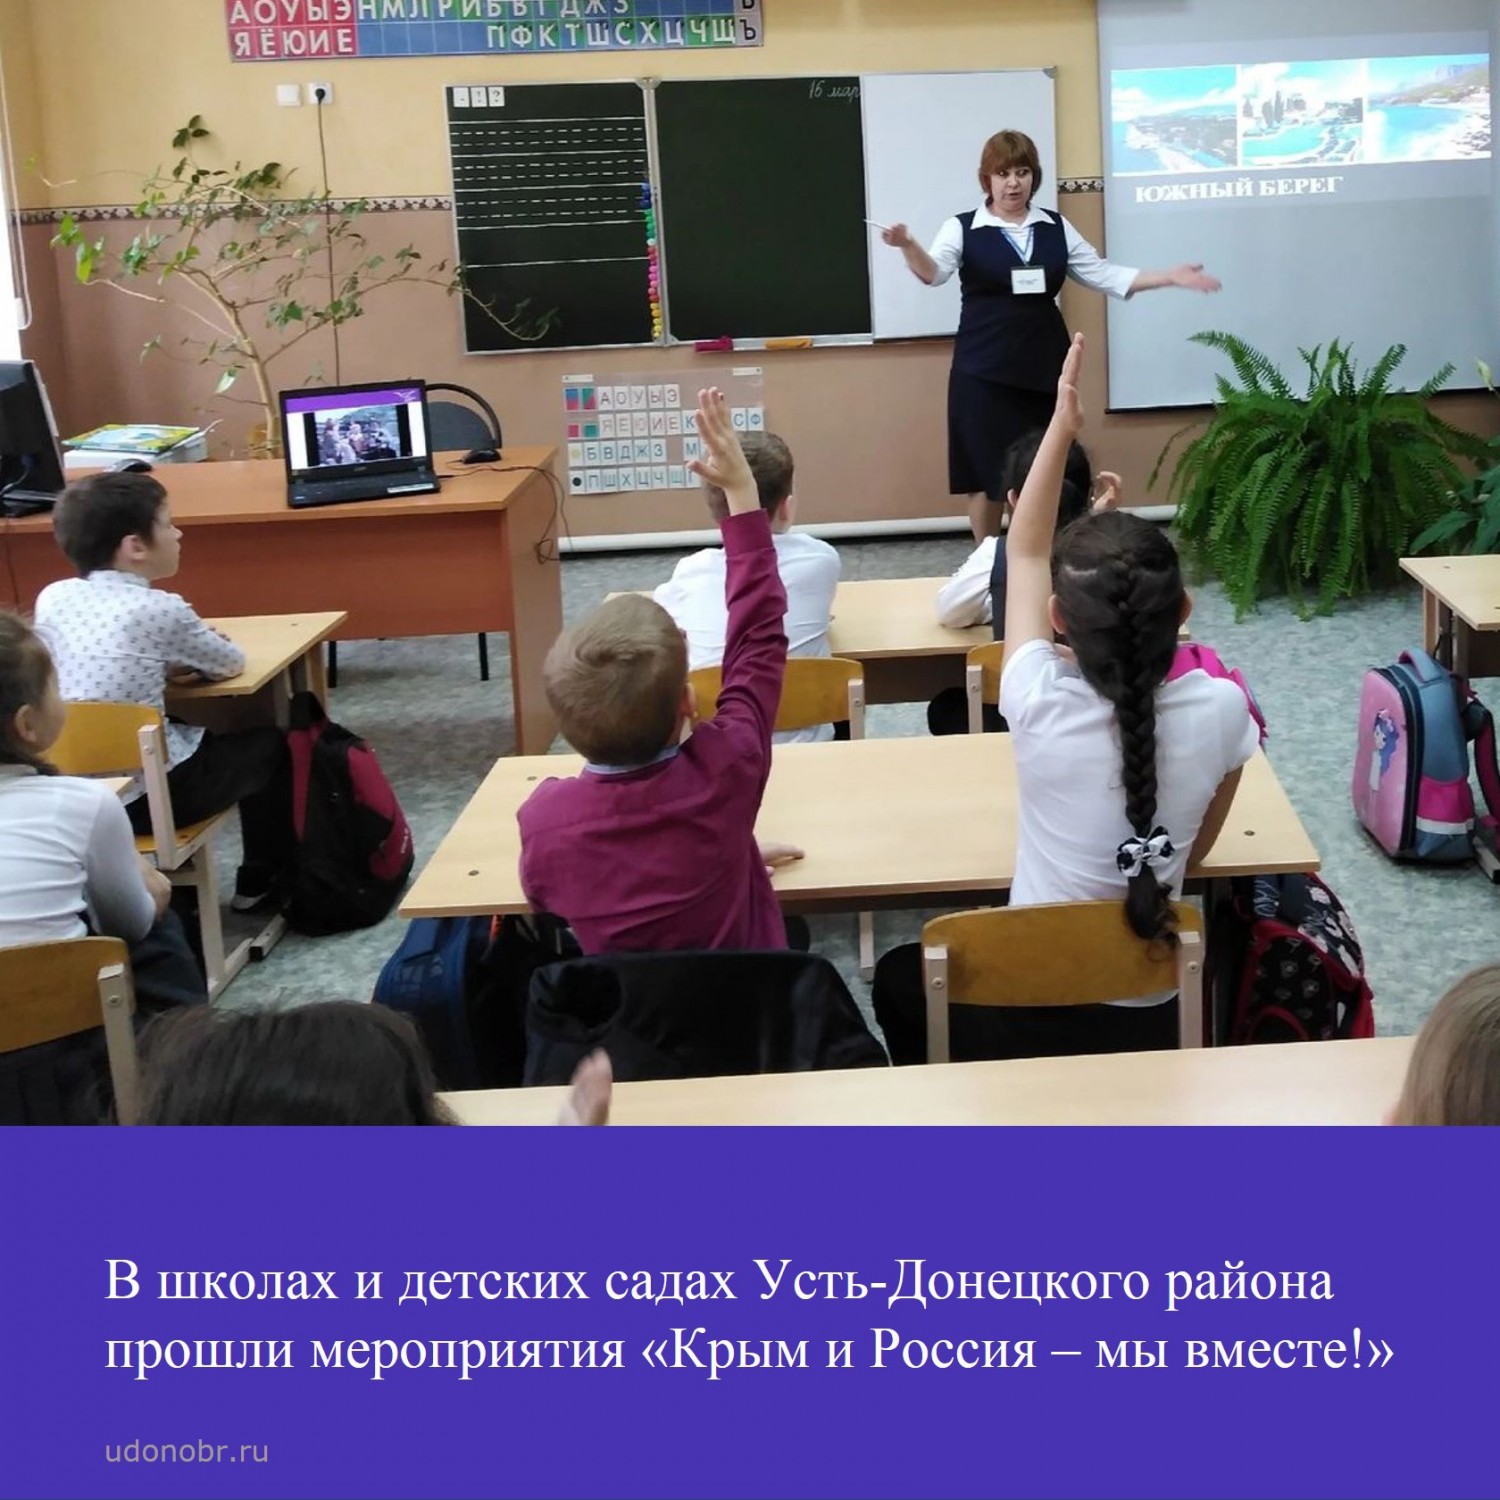 В школах и детских садах Усть-Донецкого района прошли мероприятия «Крым и Россия – мы вместе!»